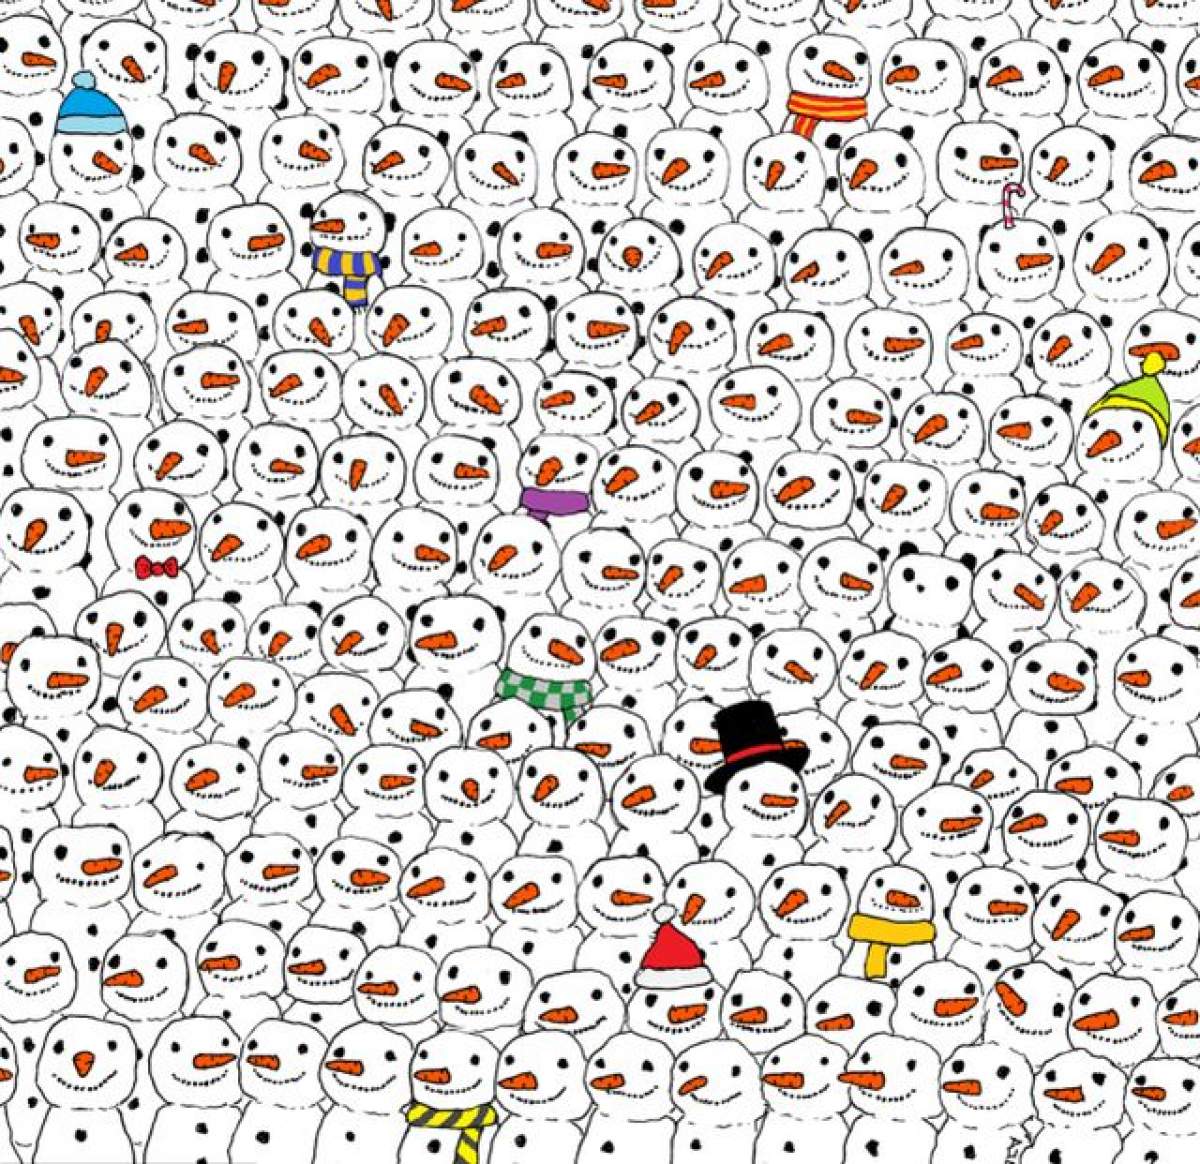 Puzzle-ul care a ajuns viral pe internet. Punem pariu că nu o să îi rezolvaţi! Unde este ursul panda în această imagine?